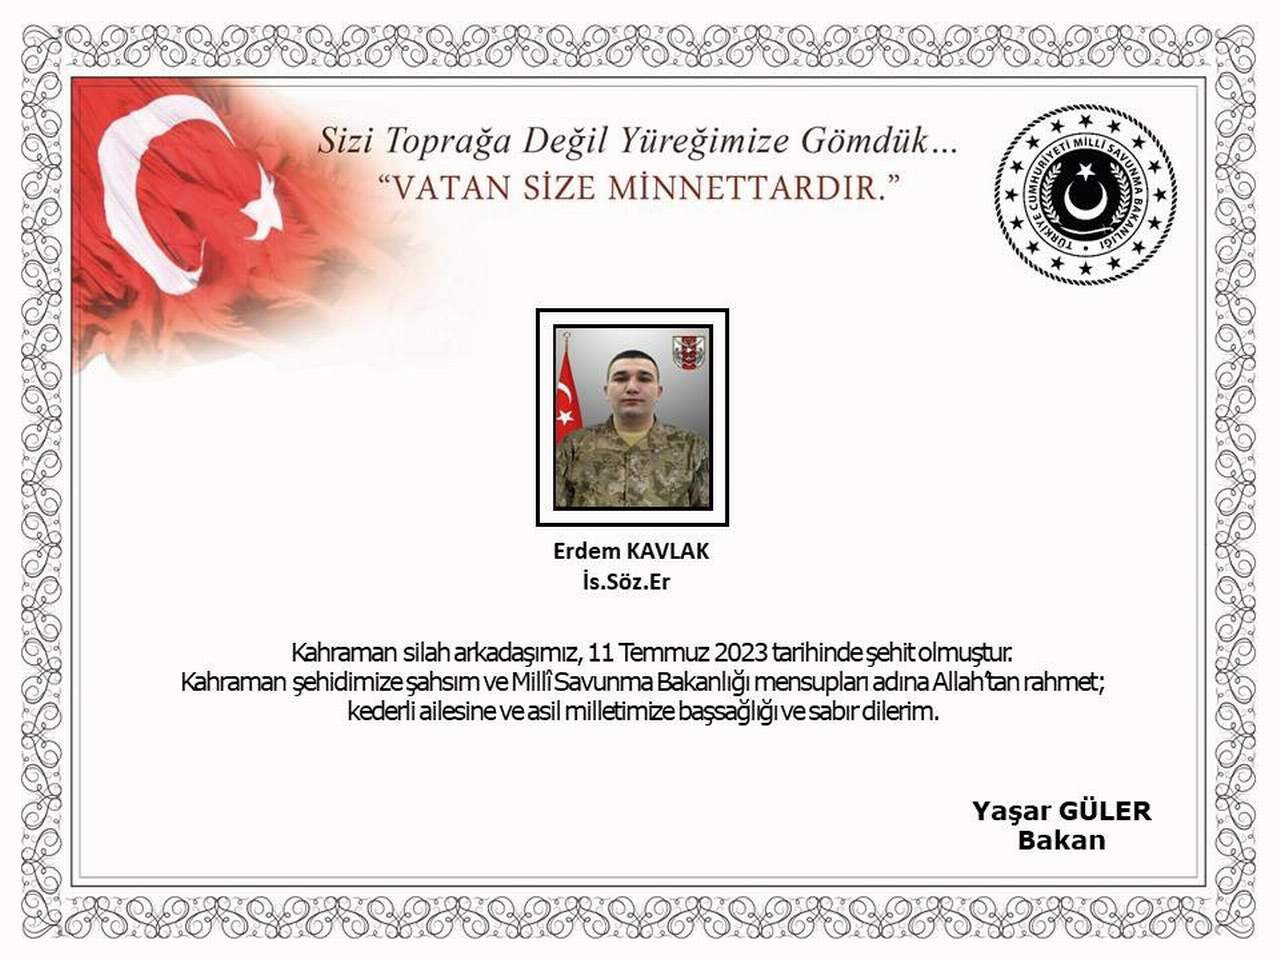 Milli Savunma Bakanlığı, Pençe-Kilit operasyonu bölgesinde meydana gelen silah kazası sonucu Söz. Er Erdem Kavlak’ın şehit olduğunu açıkladı.